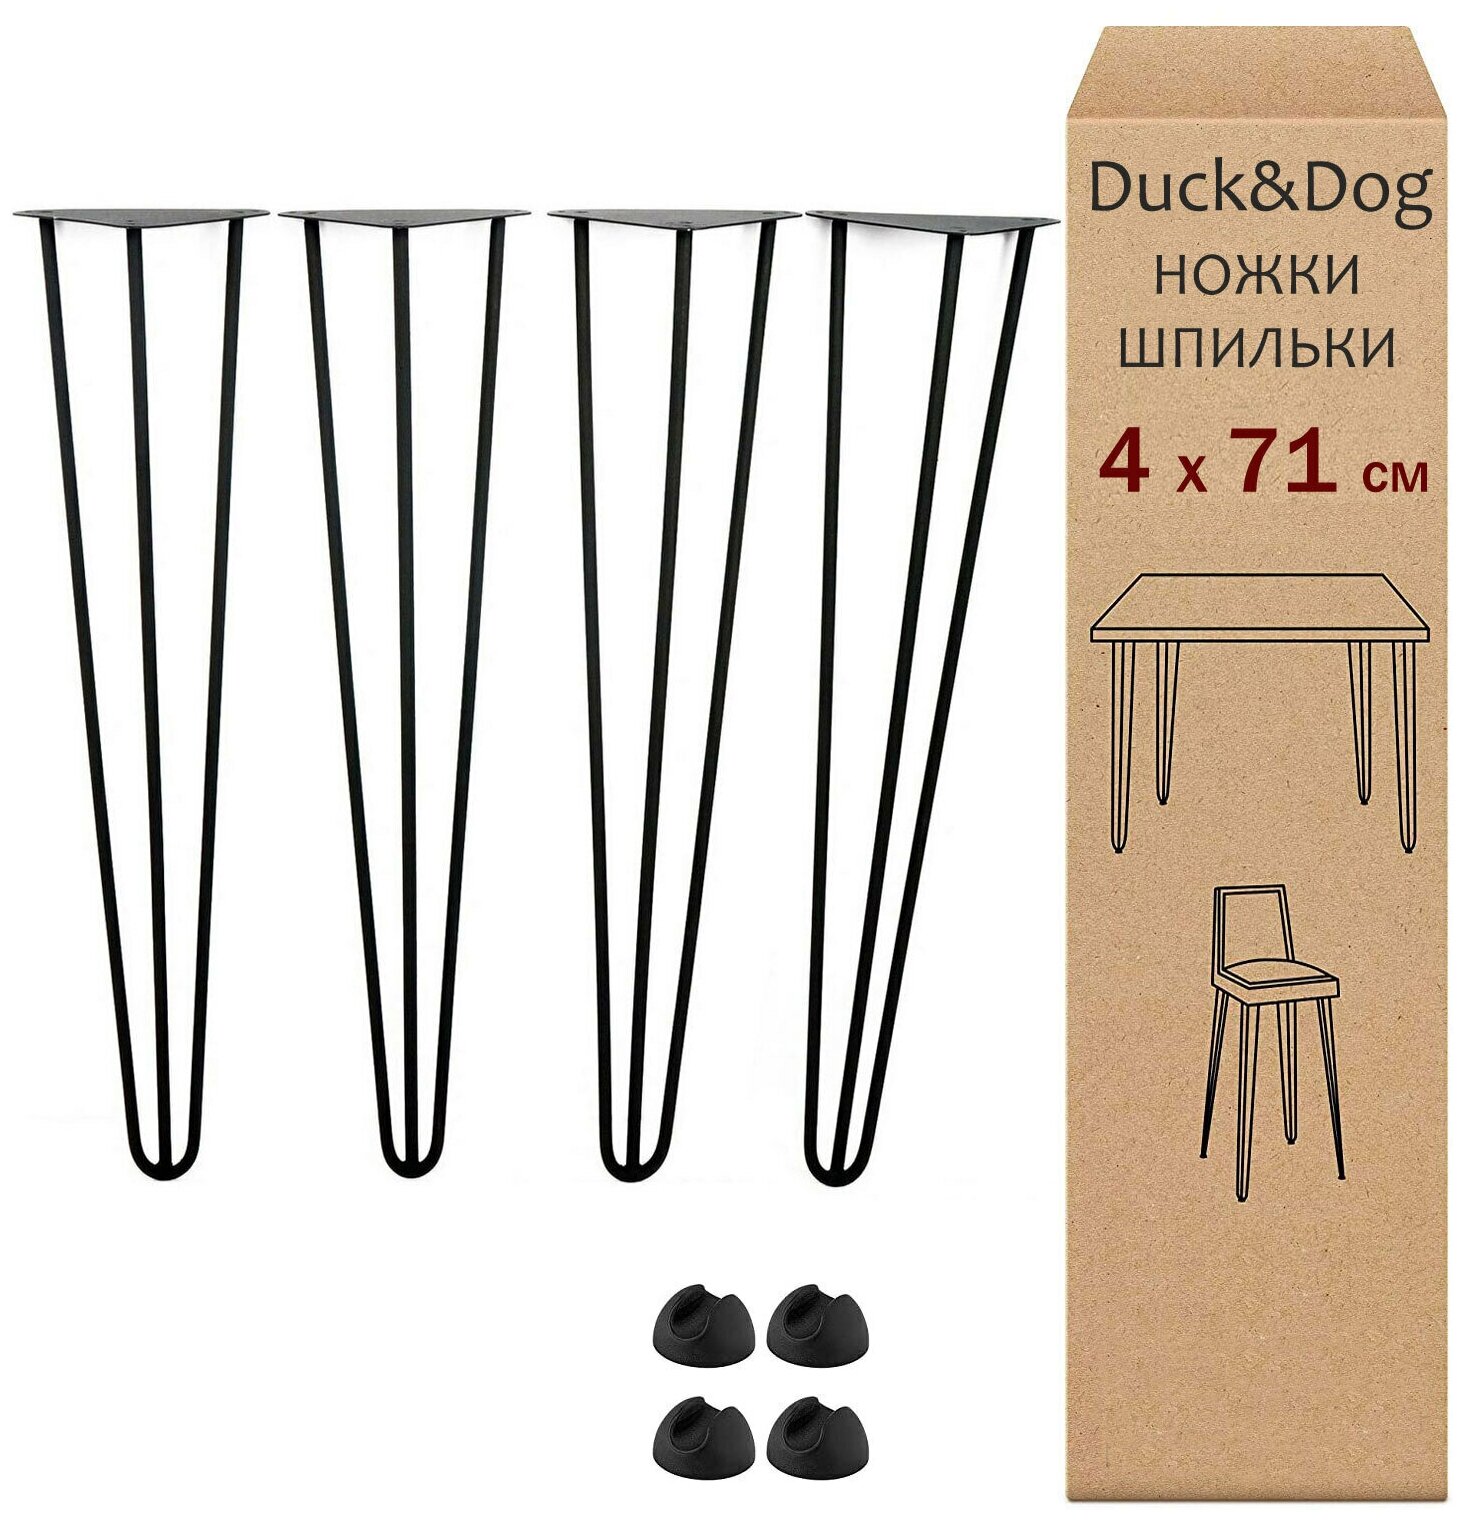 Ножки для стола шпильки из металла усиленные лофт Duck&Dog / черные / Высота 71 см. / комплект 4 шт.